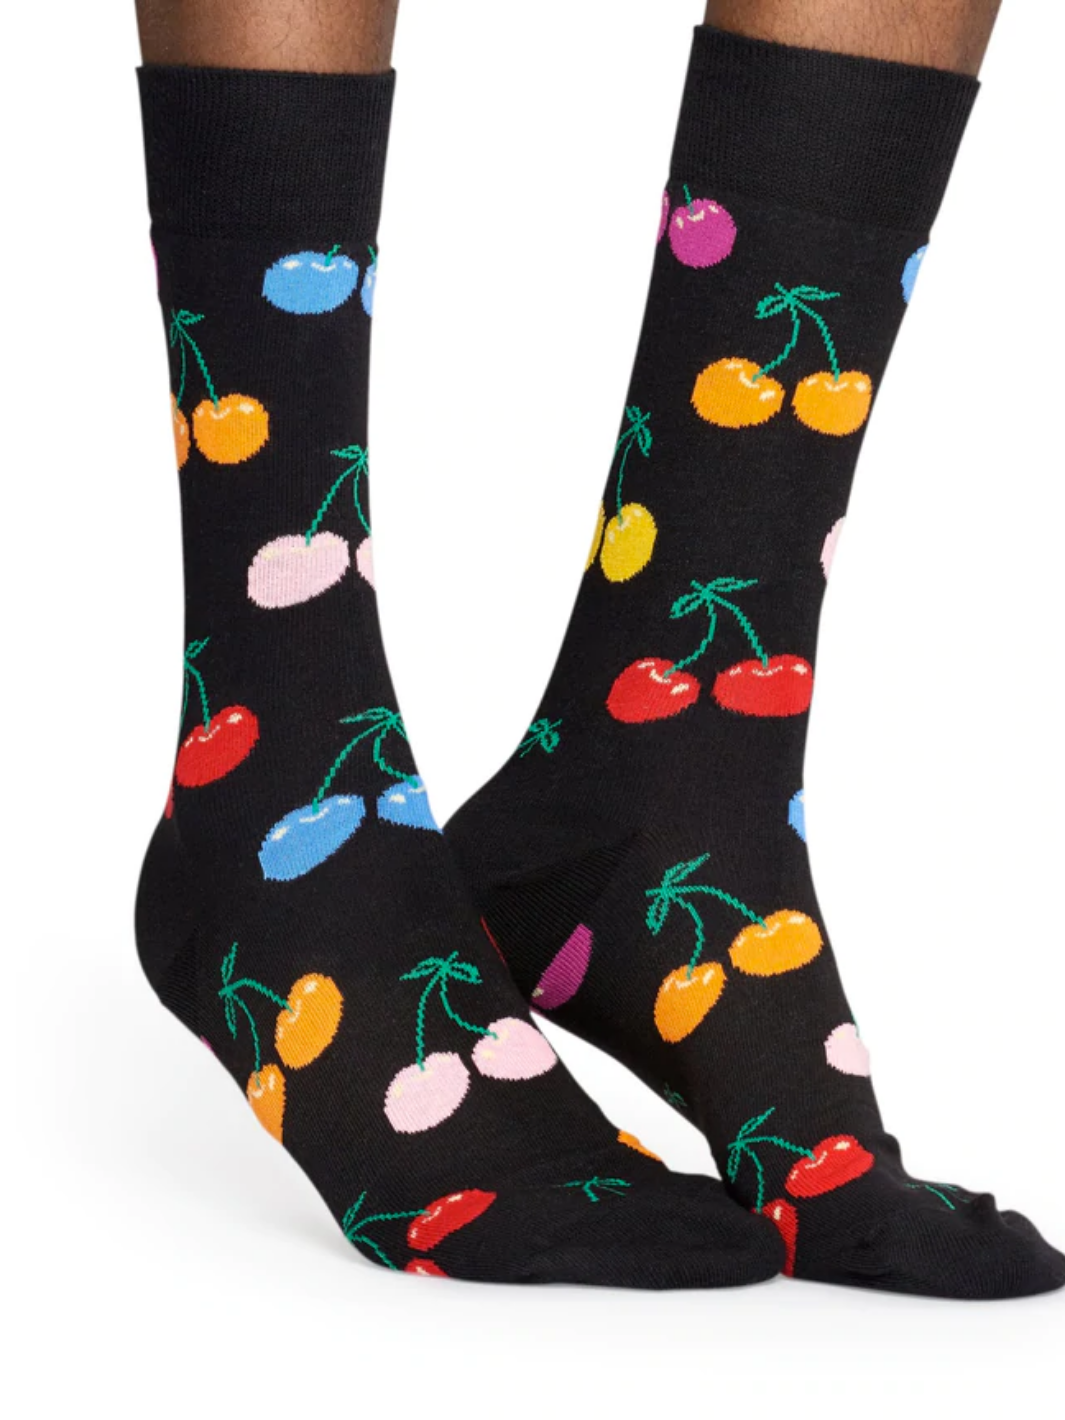 Sort Happy Socks med Kirsebær Til Ham & Hende